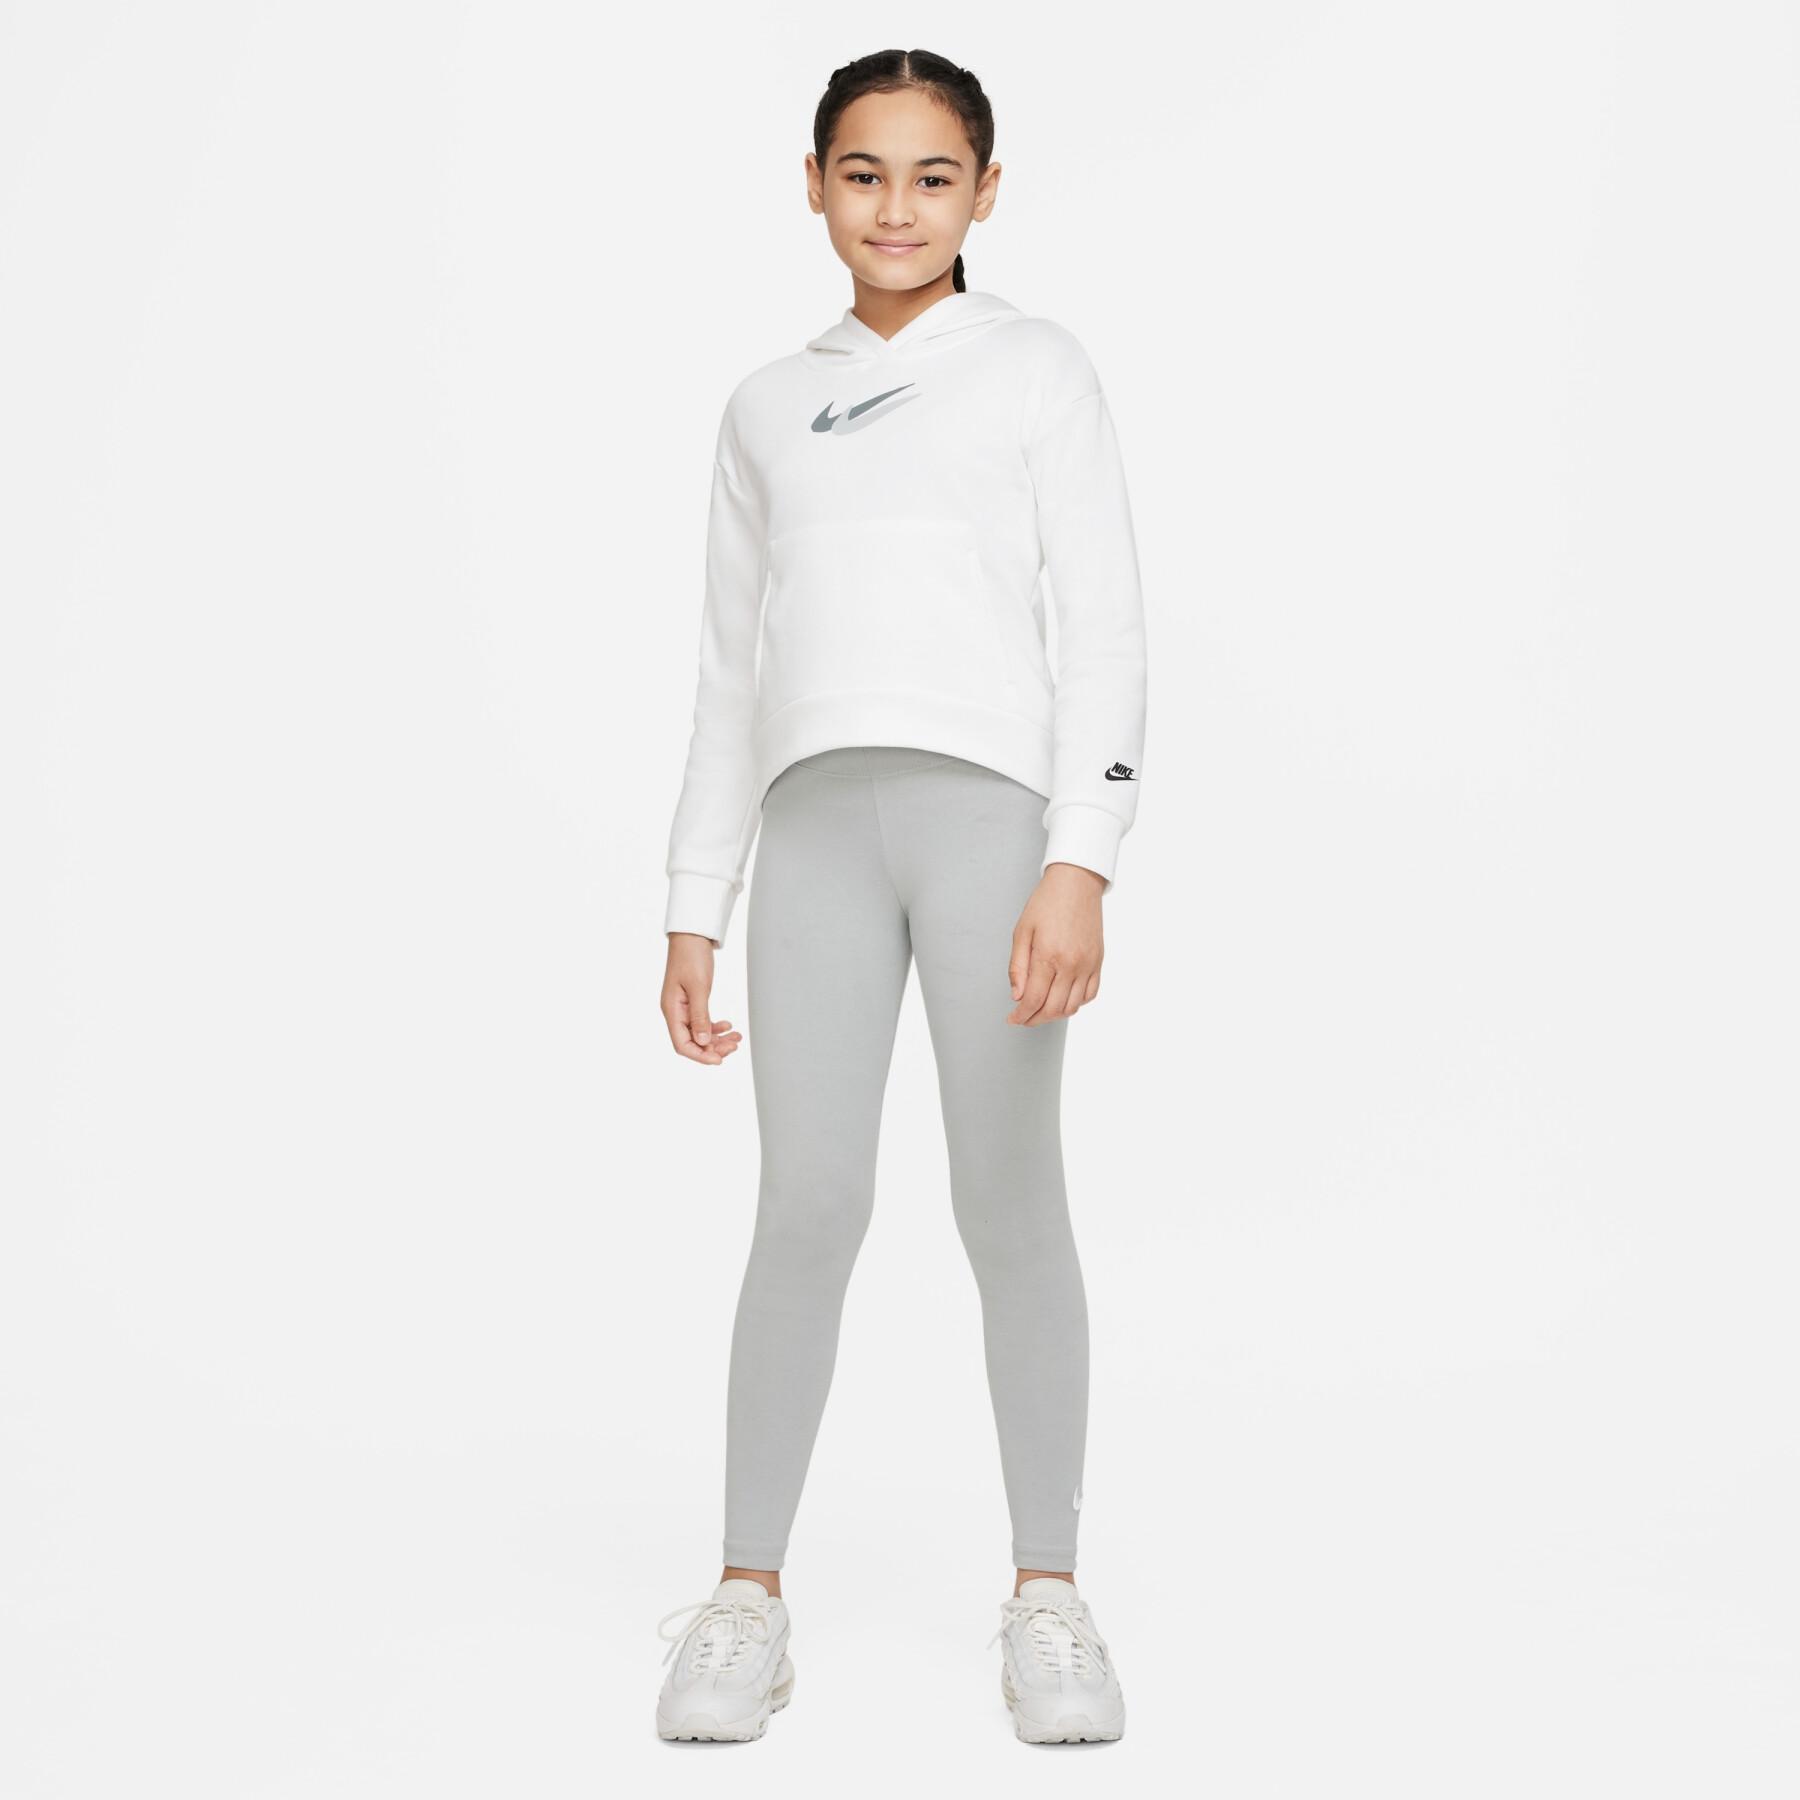 Bedrucktes Sweatshirt für Mädchen Nike Sportswear